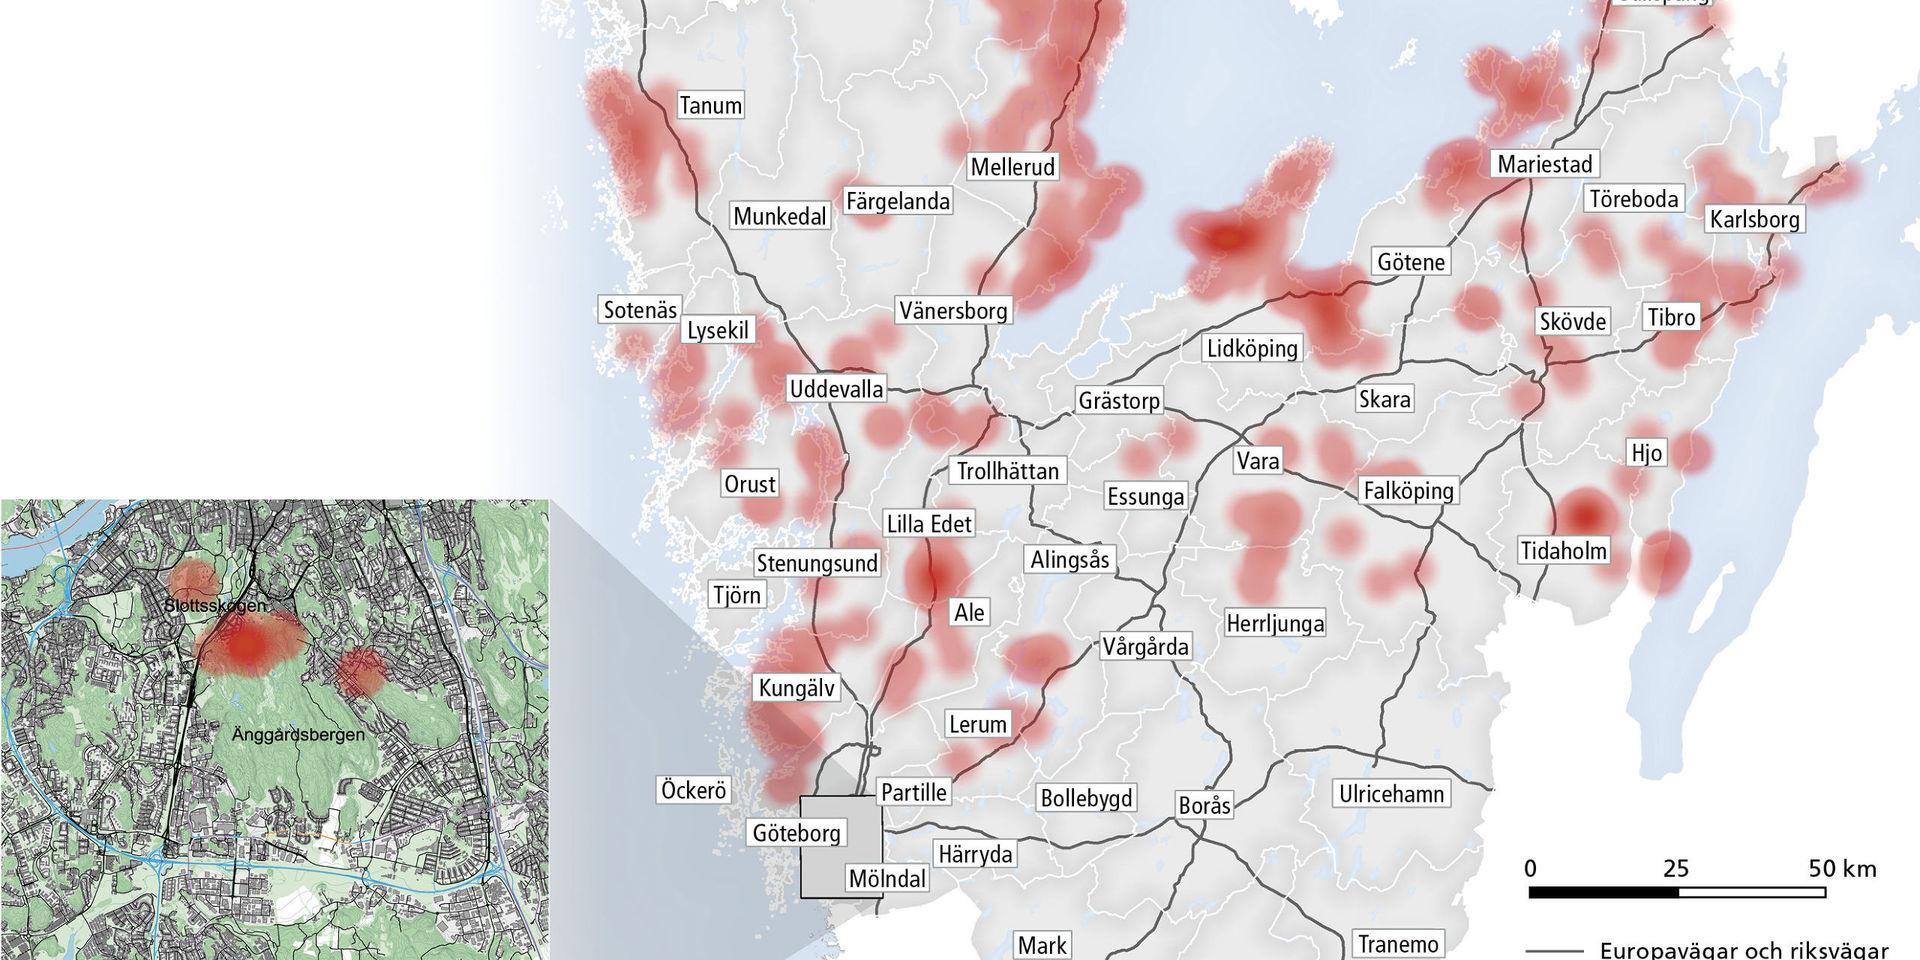 De röda områdena klassas i år som riskområden för att bli smittad av TBE av Västra Götalandsregionen. 